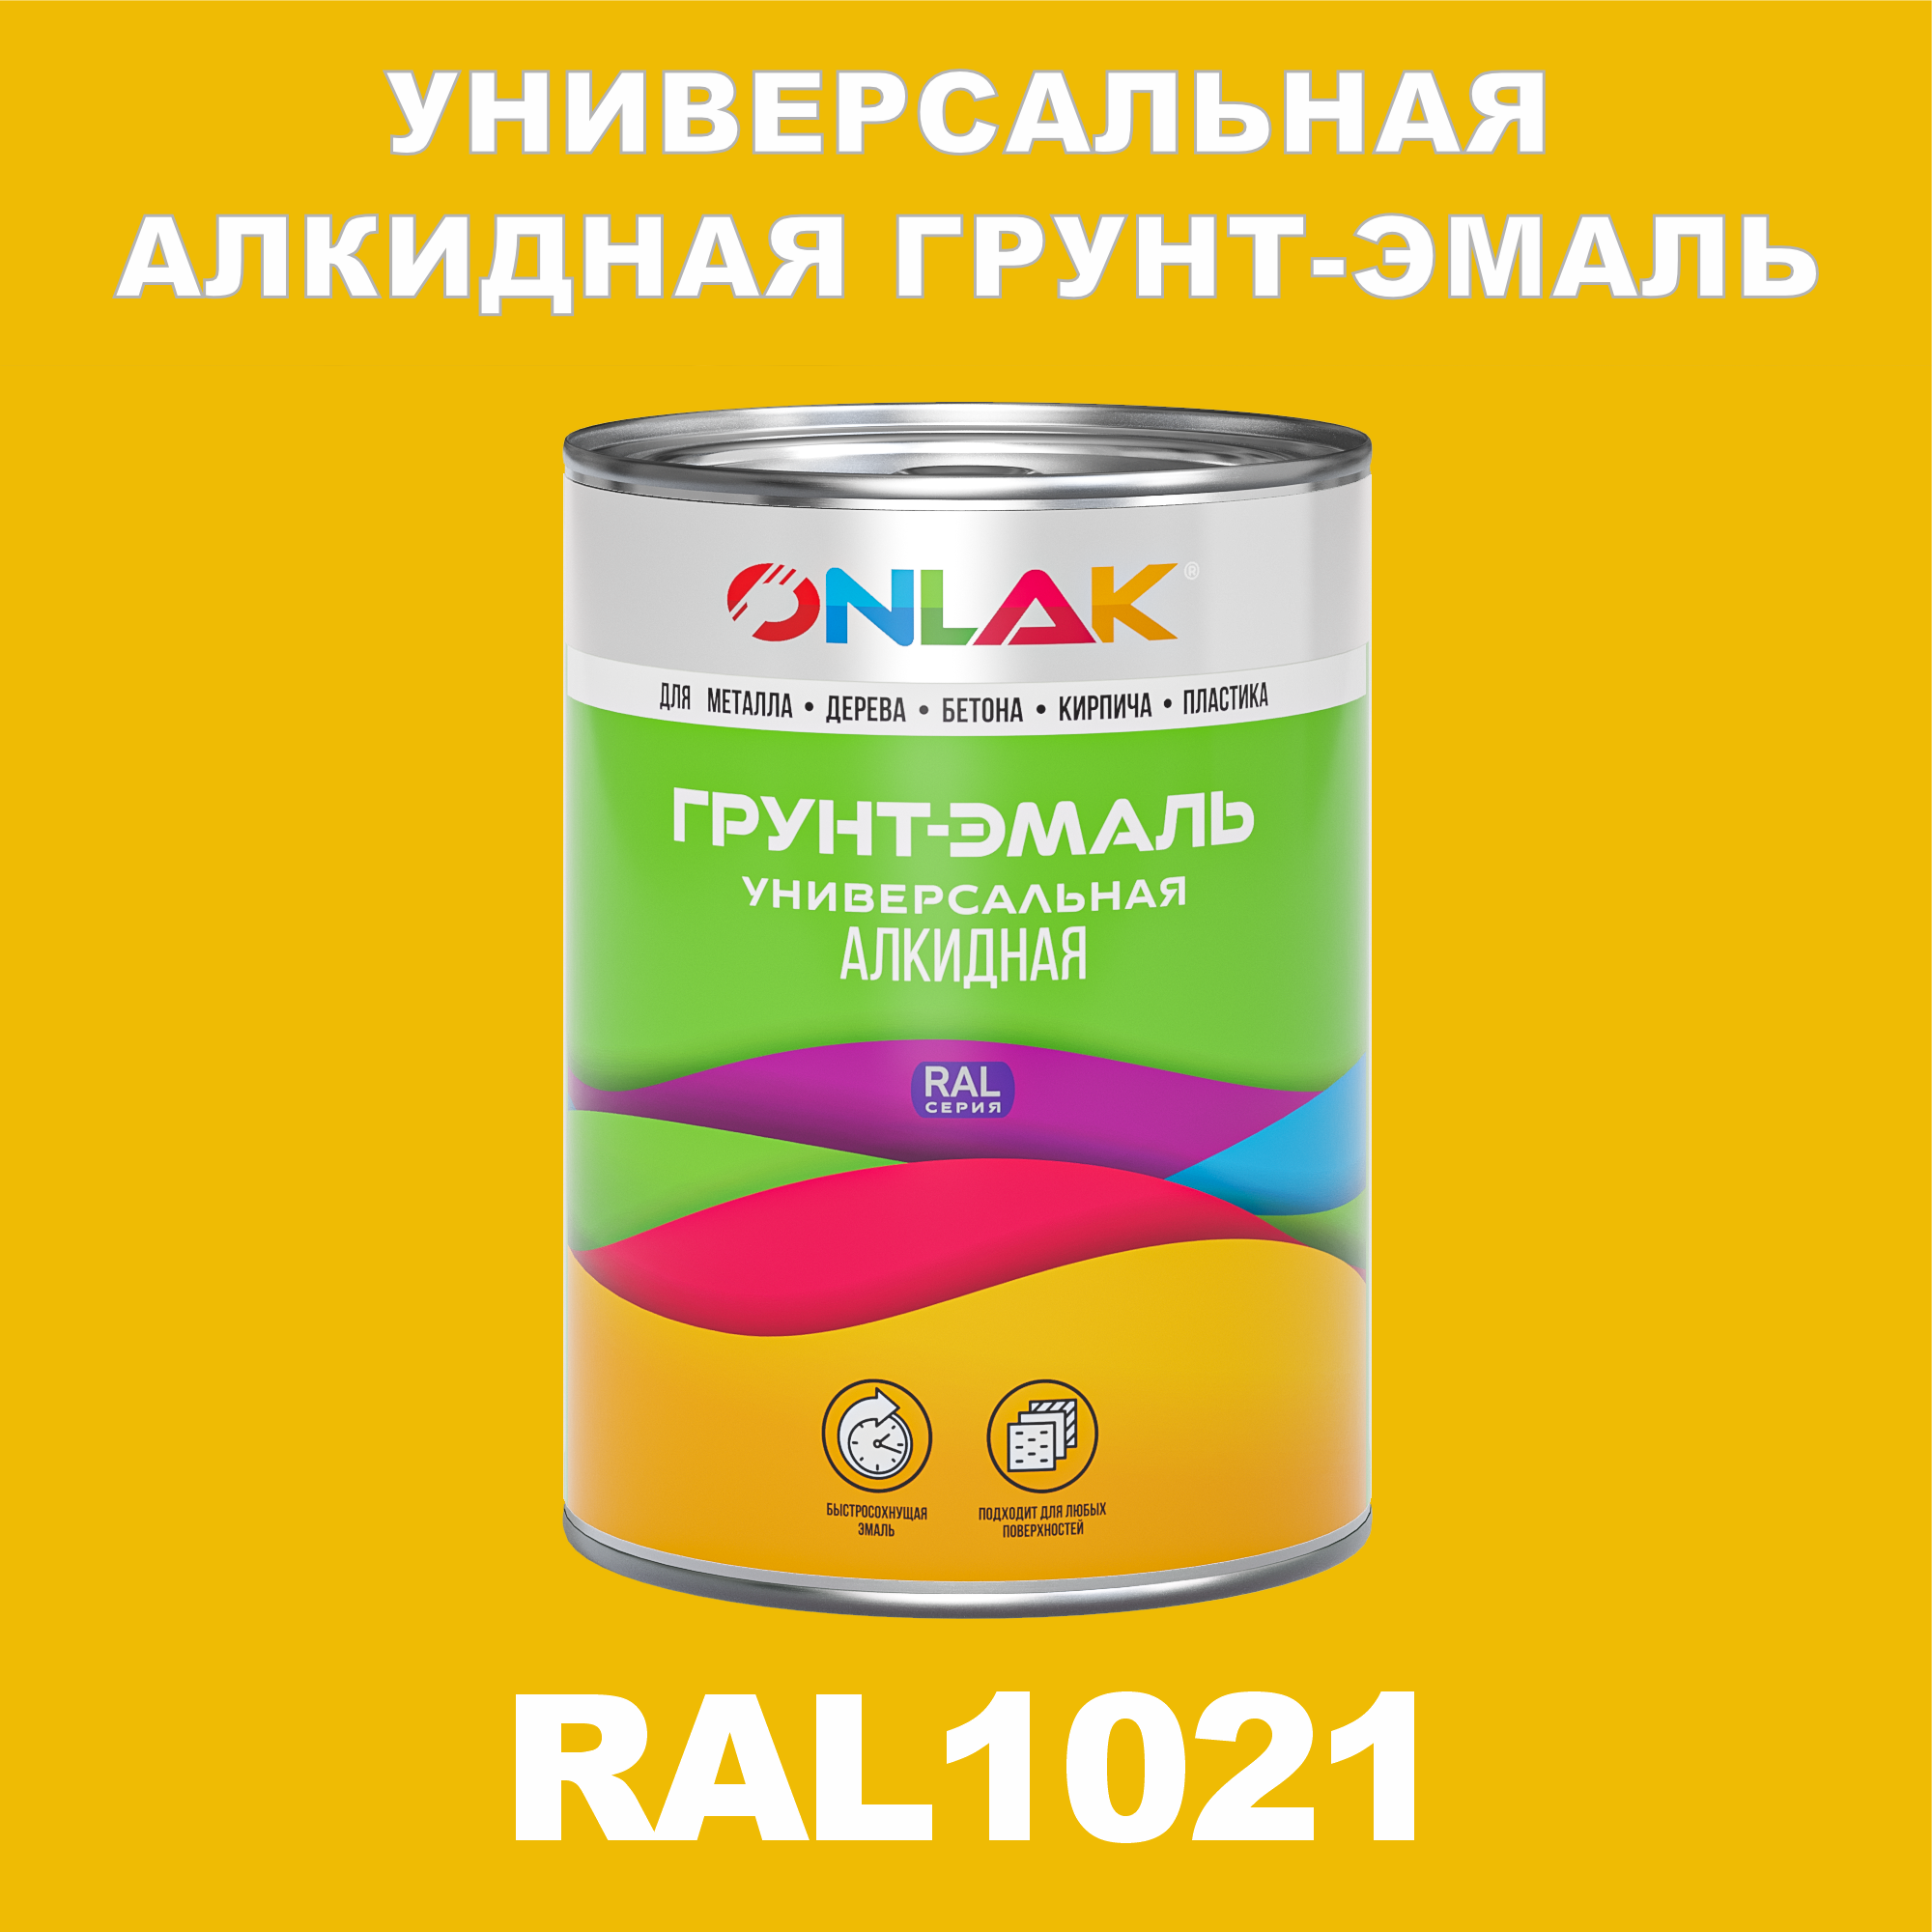 Грунт-эмаль ONLAK 1К RAL1021 антикоррозионная алкидная по металлу по ржавчине 1 кг грунт эмаль skladno по ржавчине алкидная желтая 1 8 кг